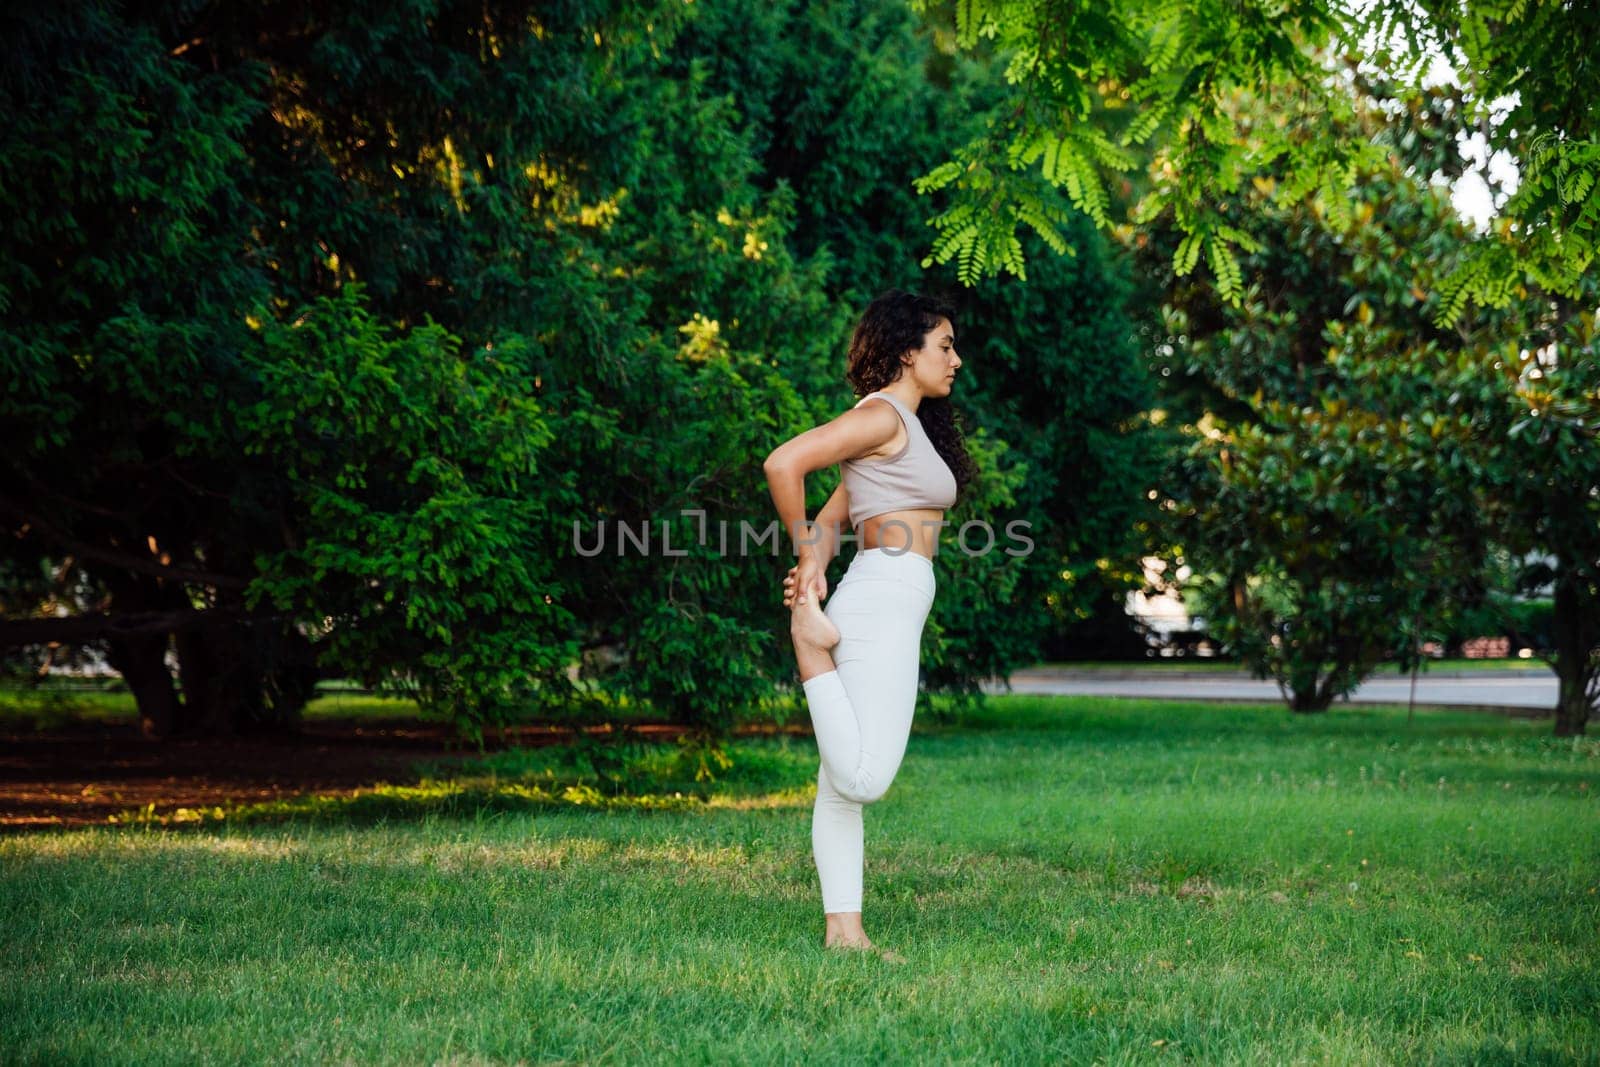 Woman doing yoga exercises asana breathing balance by Simakov